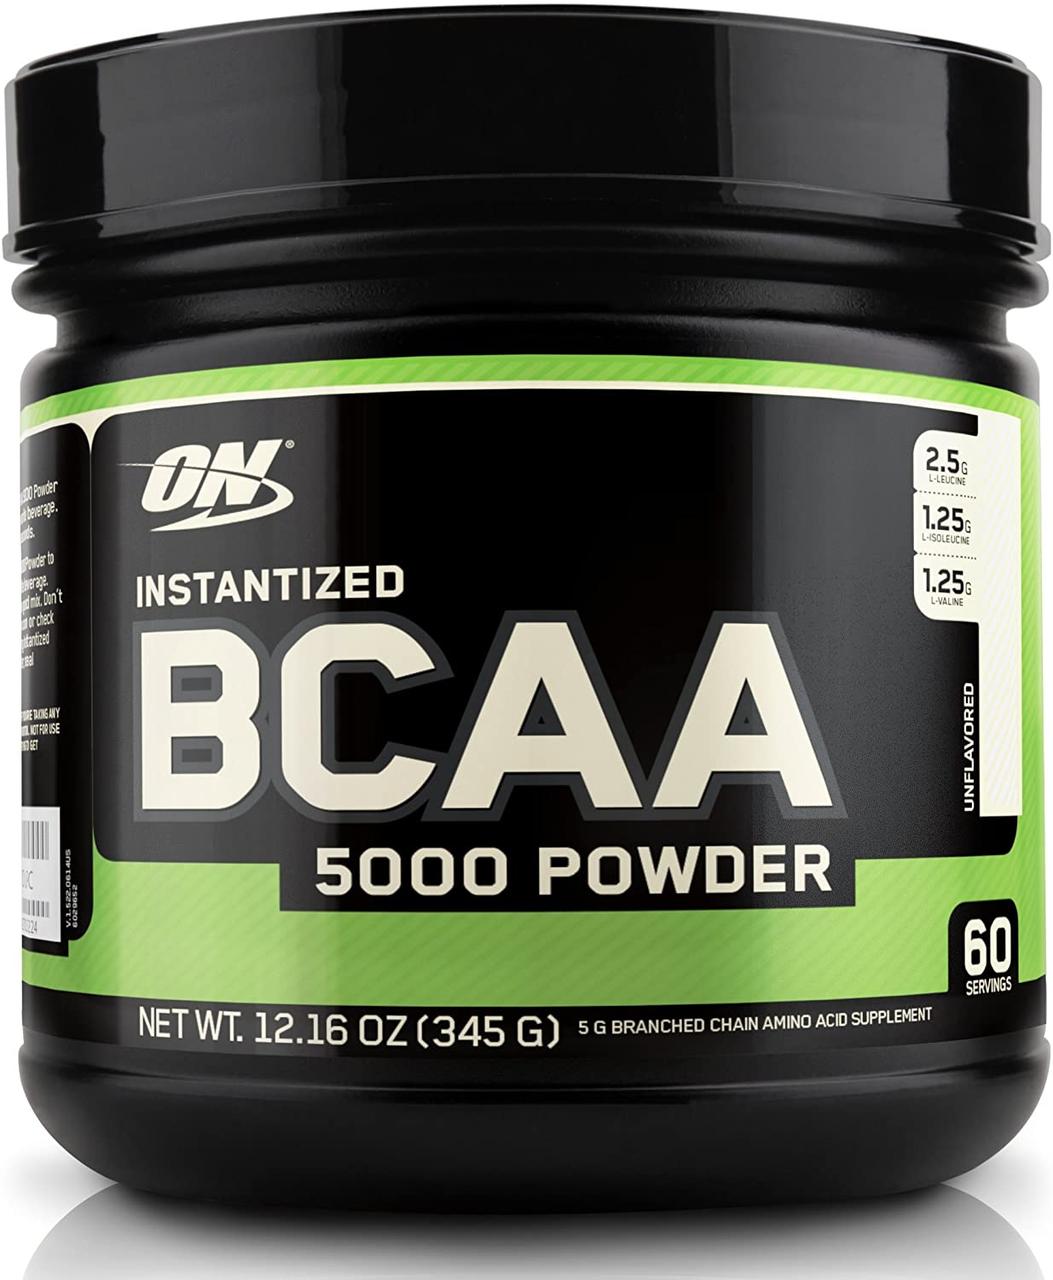 БЦАА Optimum Nutrition BCAA 5000 Powder (345 г) оптимум нутришн  Без вкуса,  мл, Optimum Nutrition. BCAA. Снижение веса Восстановление Антикатаболические свойства Сухая мышечная масса 